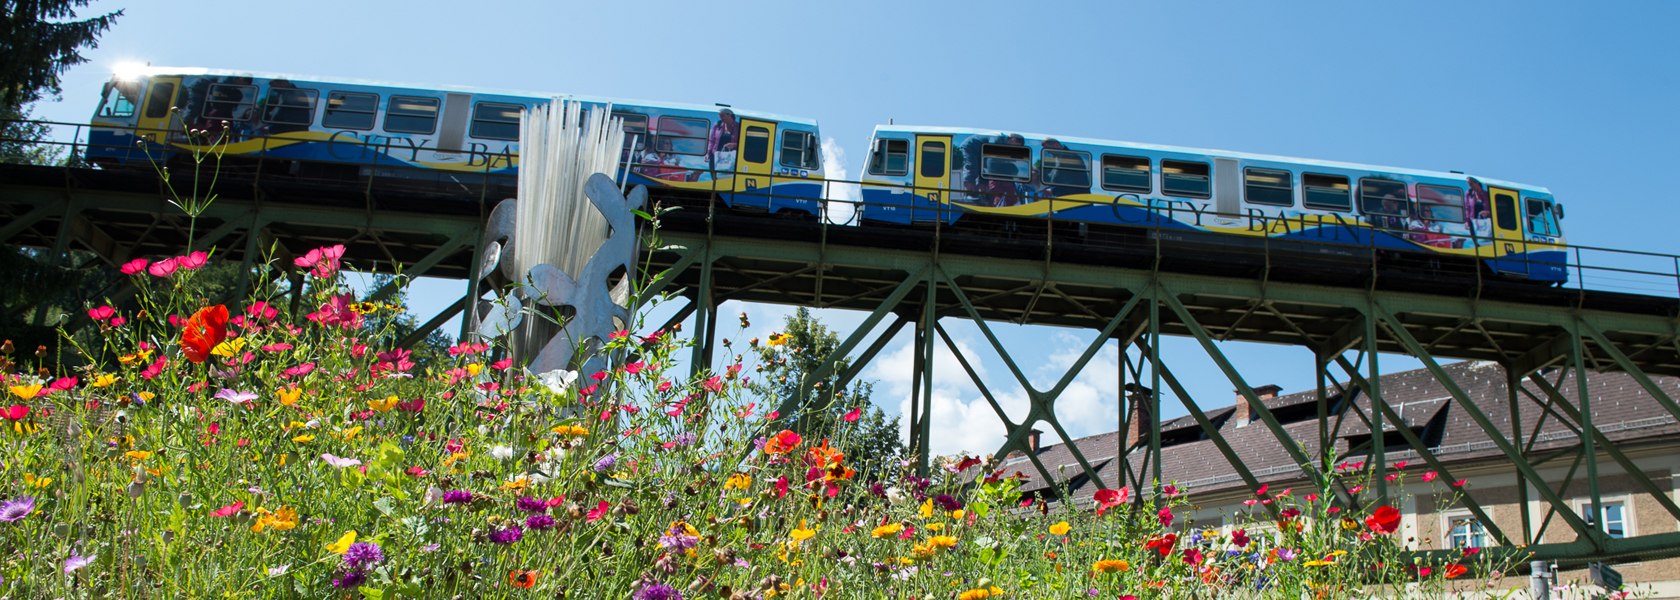 Citybahn fährt über Brücke Froschperspektive und Blumenwiese